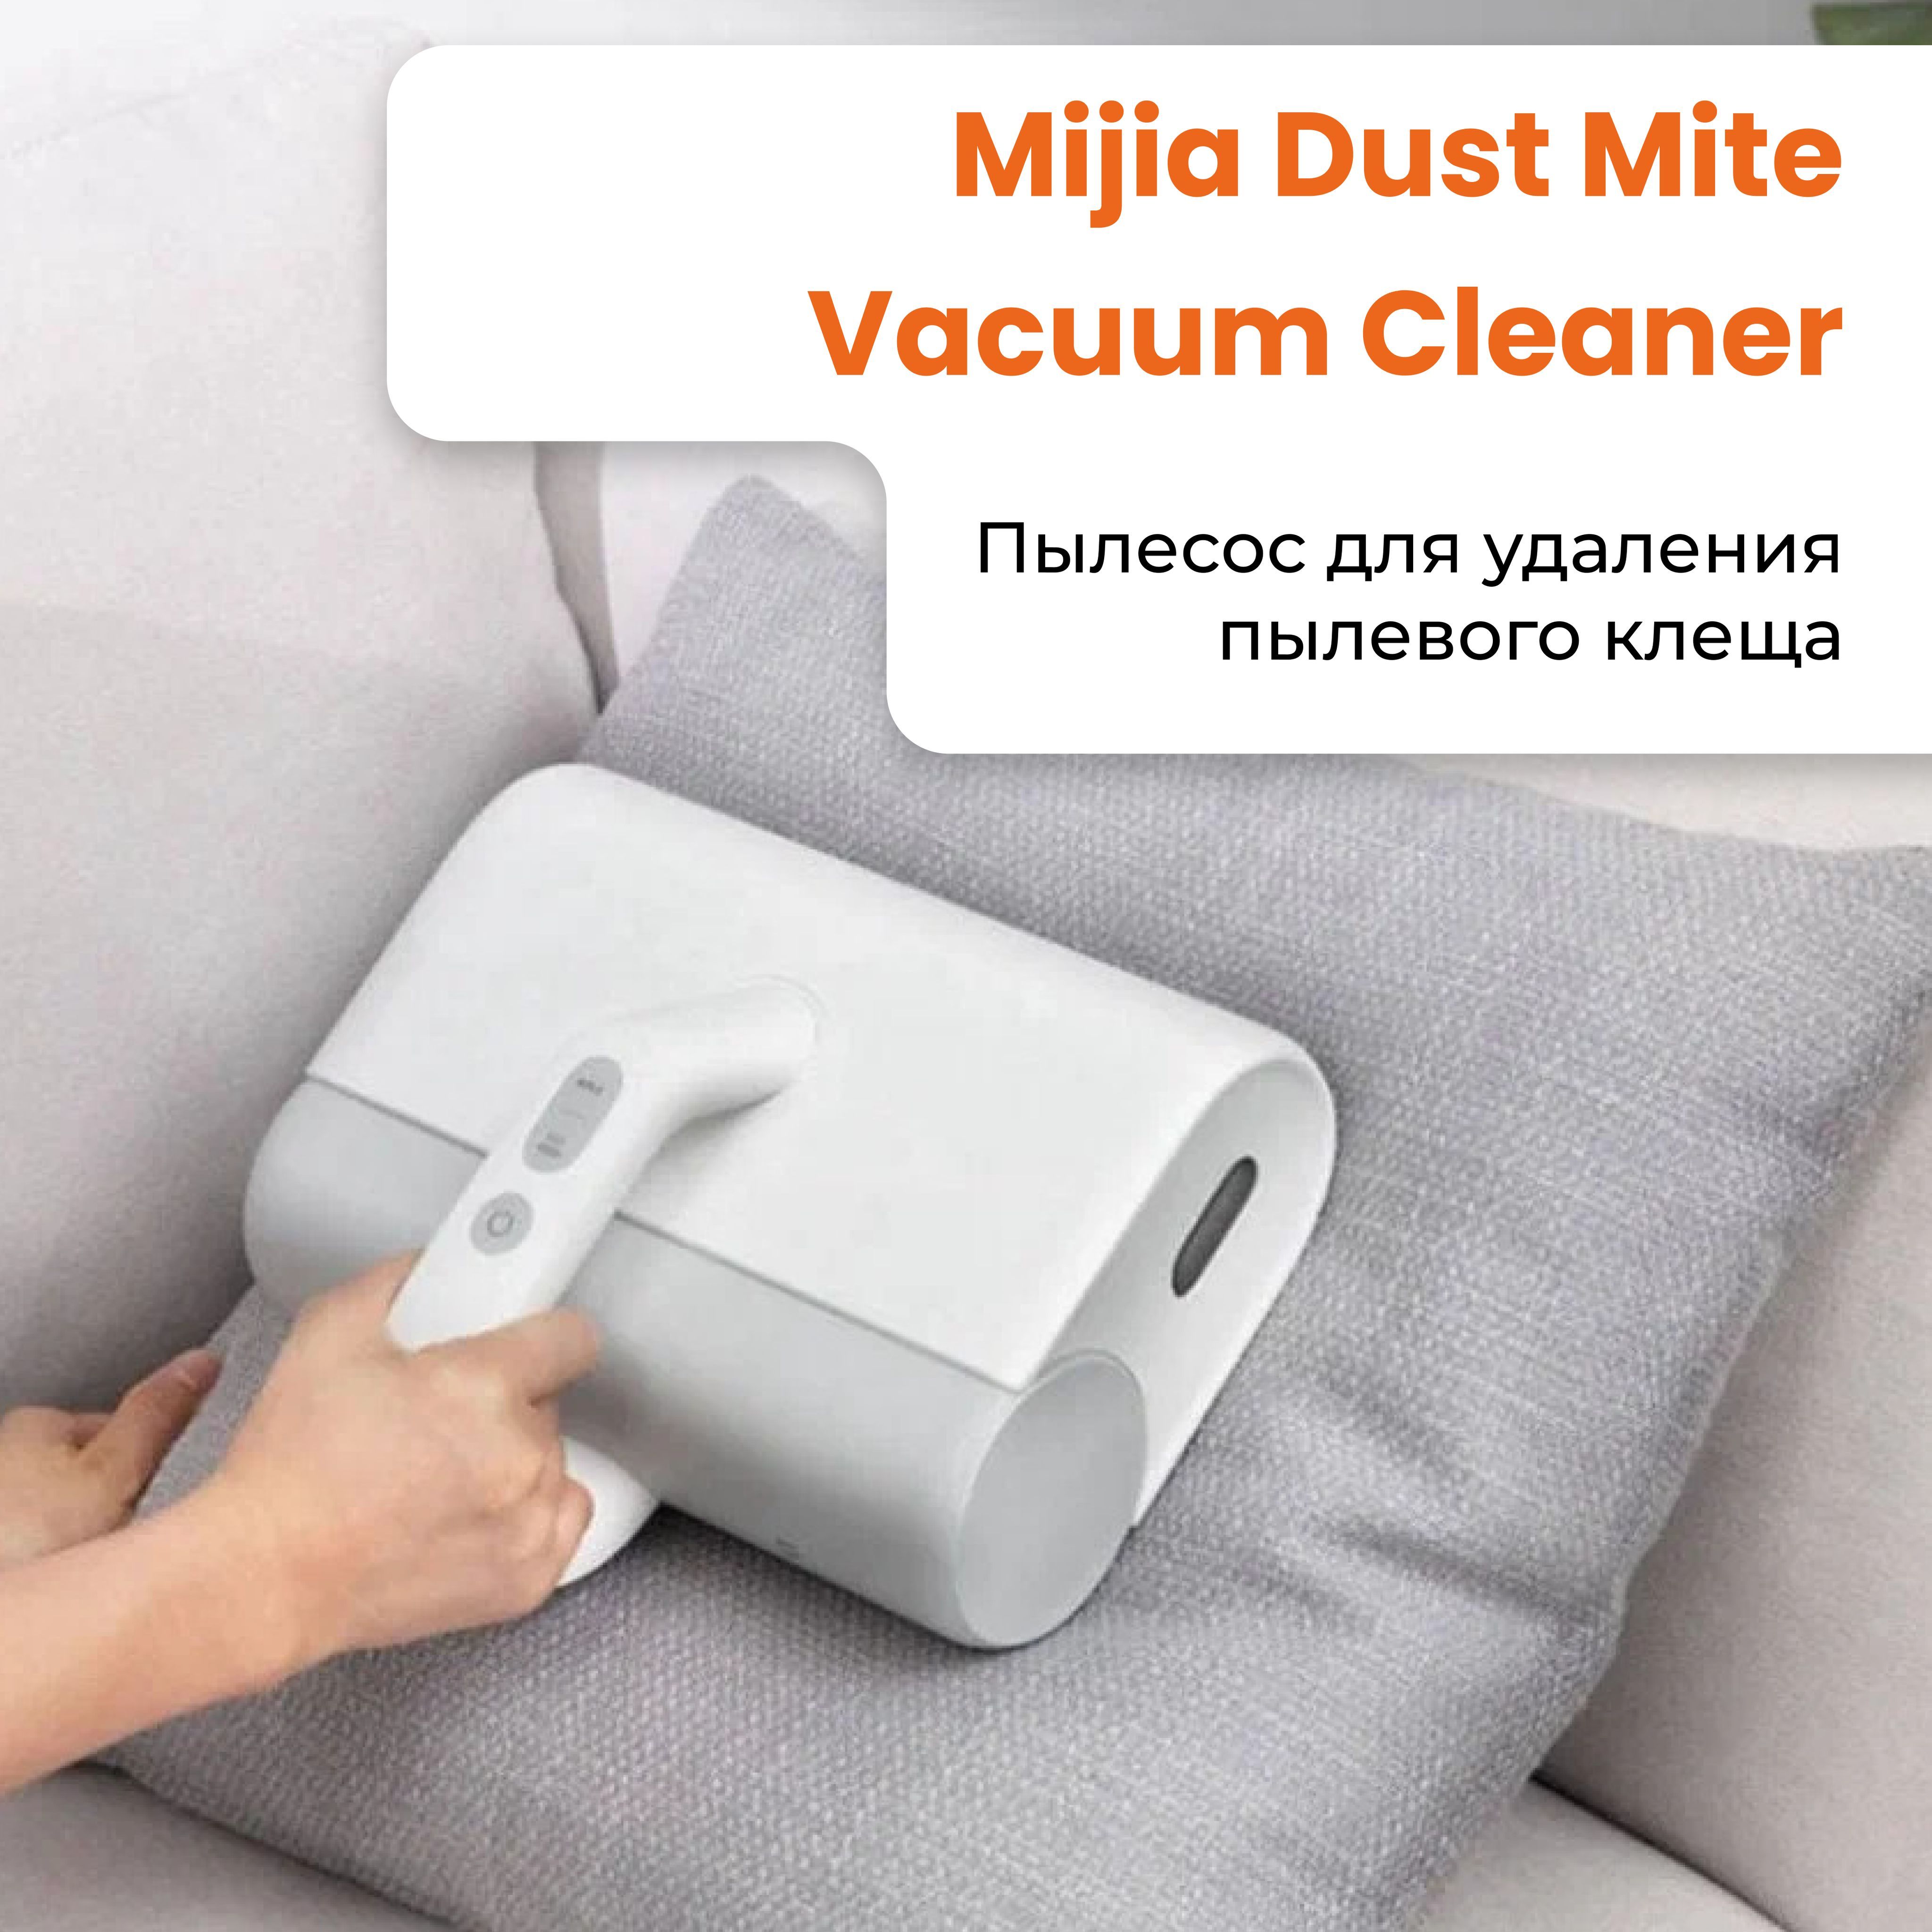 Xiaomi dust mite vacuum cleaner. Пылесос Xiaomi (mjcmy01dy). Xiaomi Mijia Dust Mite Vacuum Cleaner. Vacuum Cleaner Dust&Mite. Xiaomi Dust Mite Vacuum Cleaner mjcmy01dy лампочка.